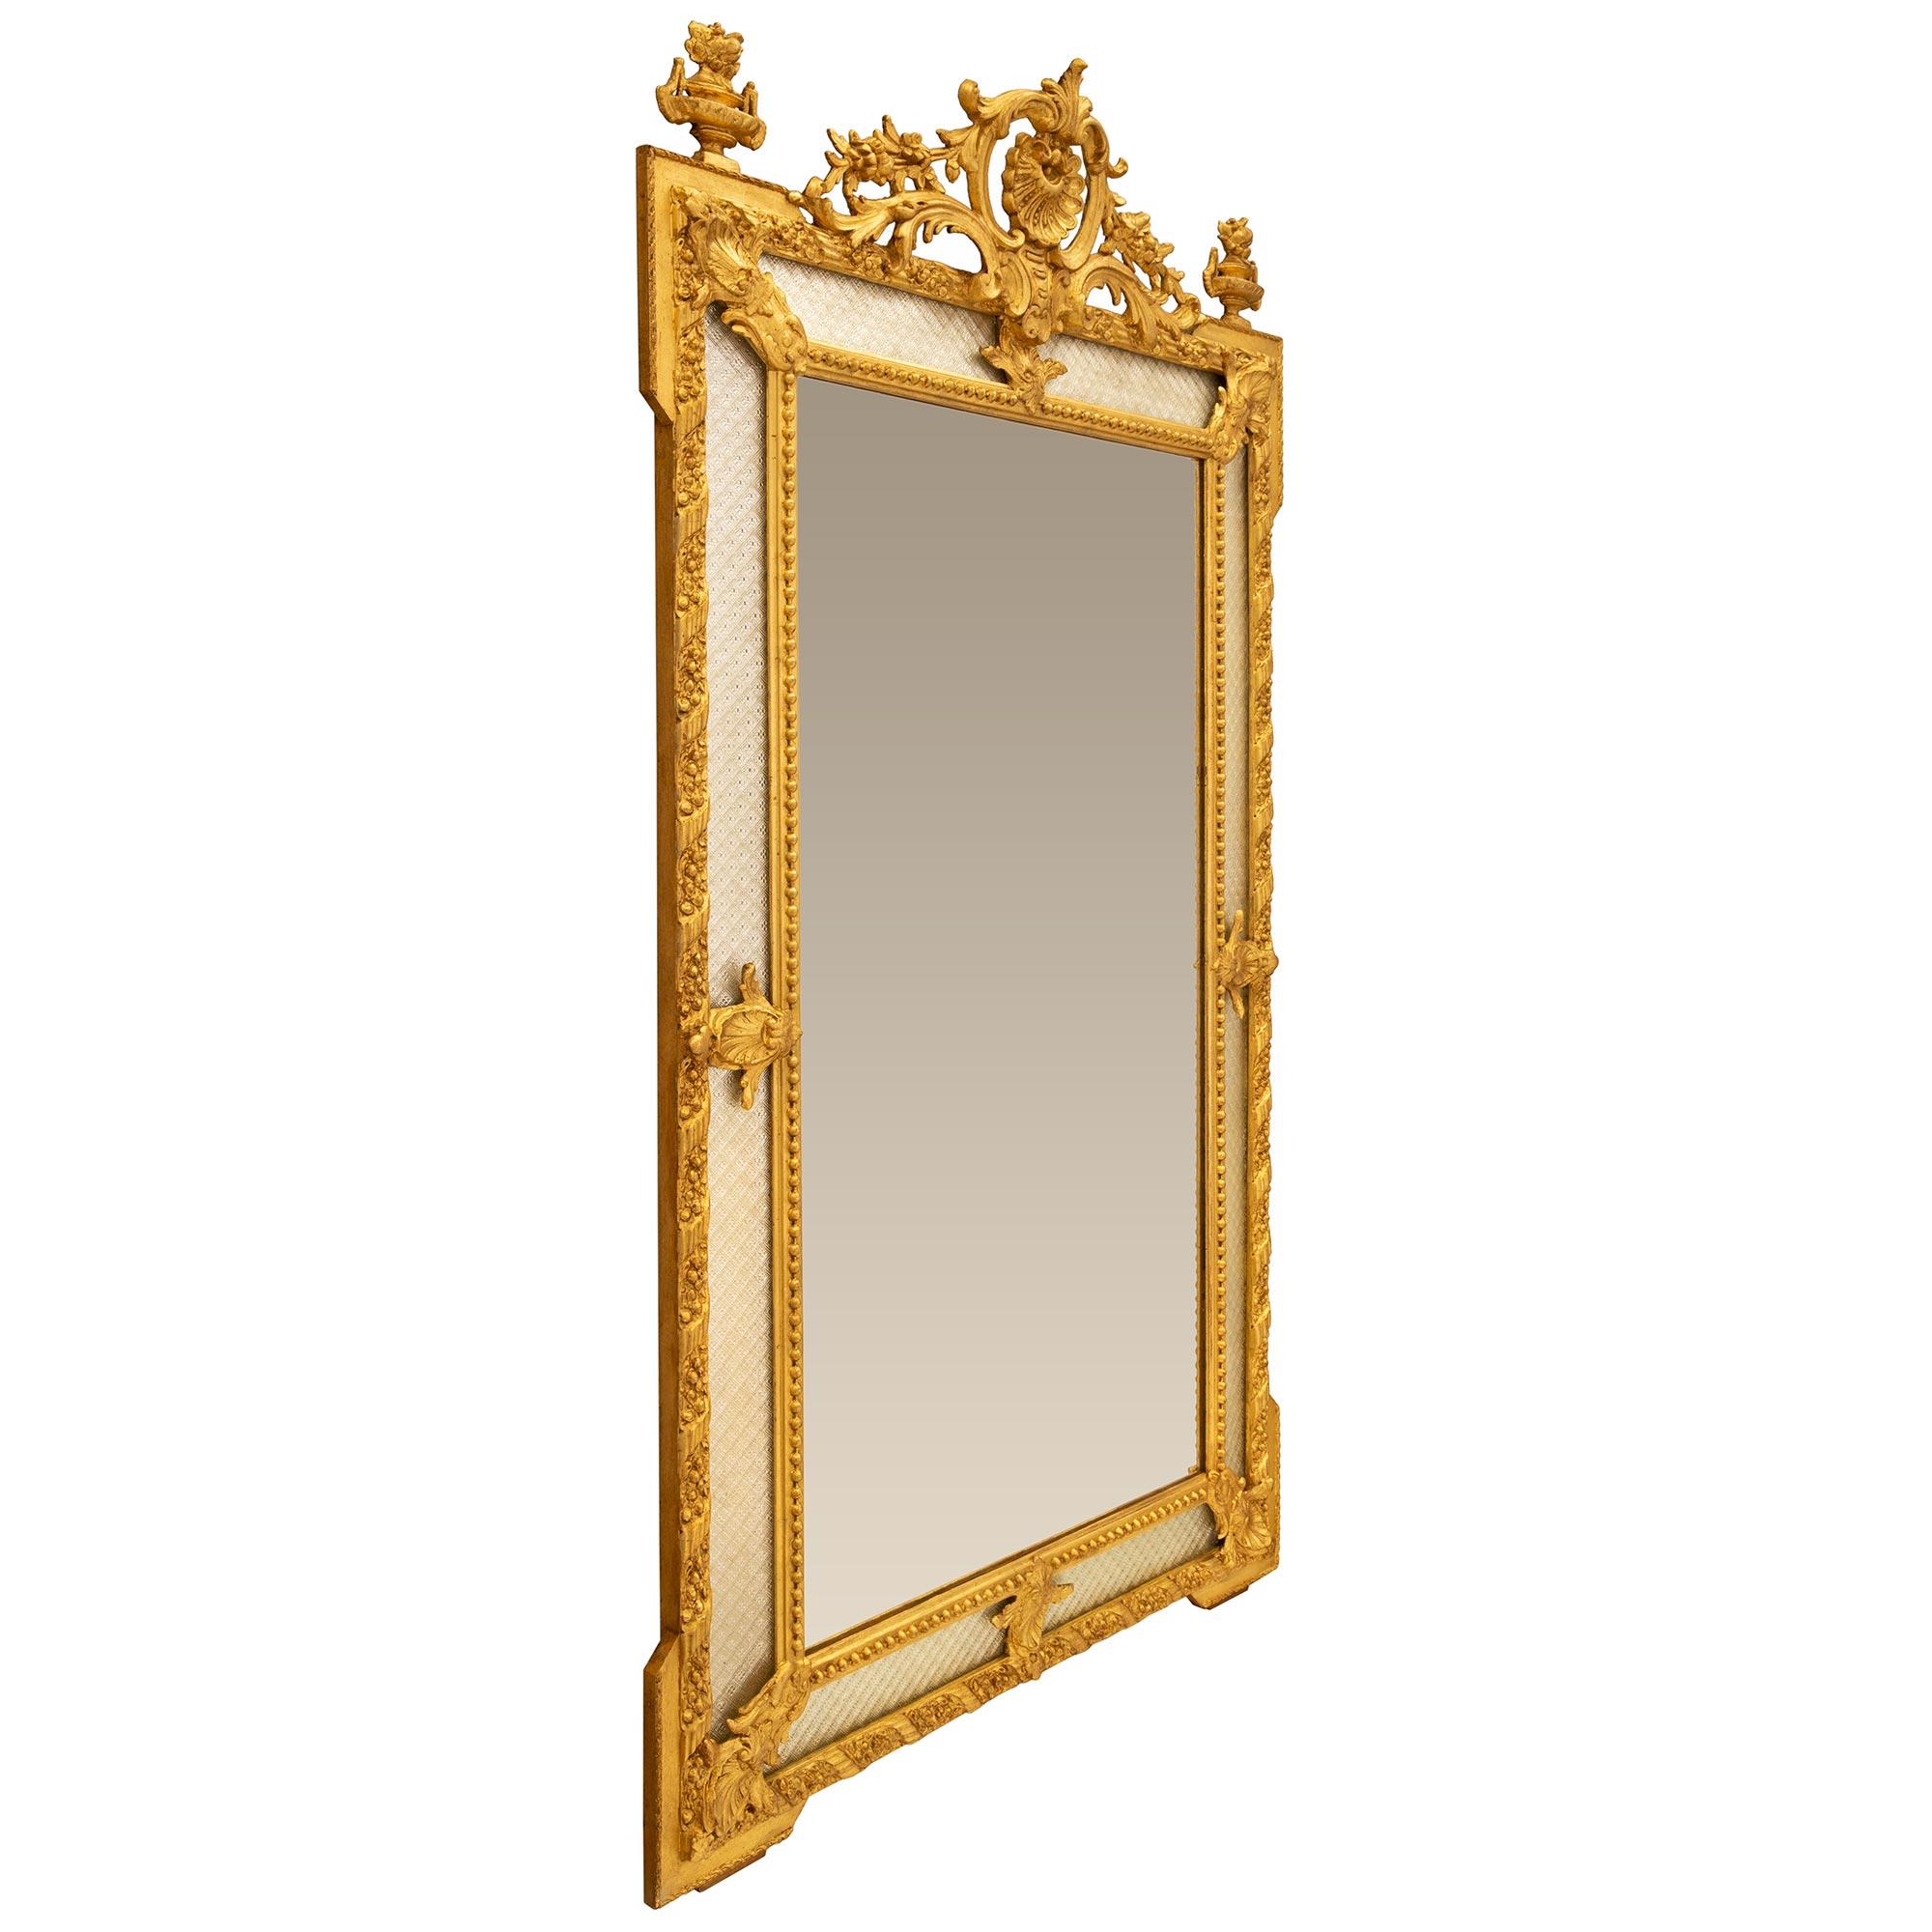 Eine außergewöhnliche und sehr elegant Französisch 19. Jahrhundert Louis XVI st. vergoldet Spiegel gerahmt. Der Spiegel behält alle seine ursprüngliche Glasplatten im gesamten mit der zentralen Spiegelplatte in einem charmanten Perlen